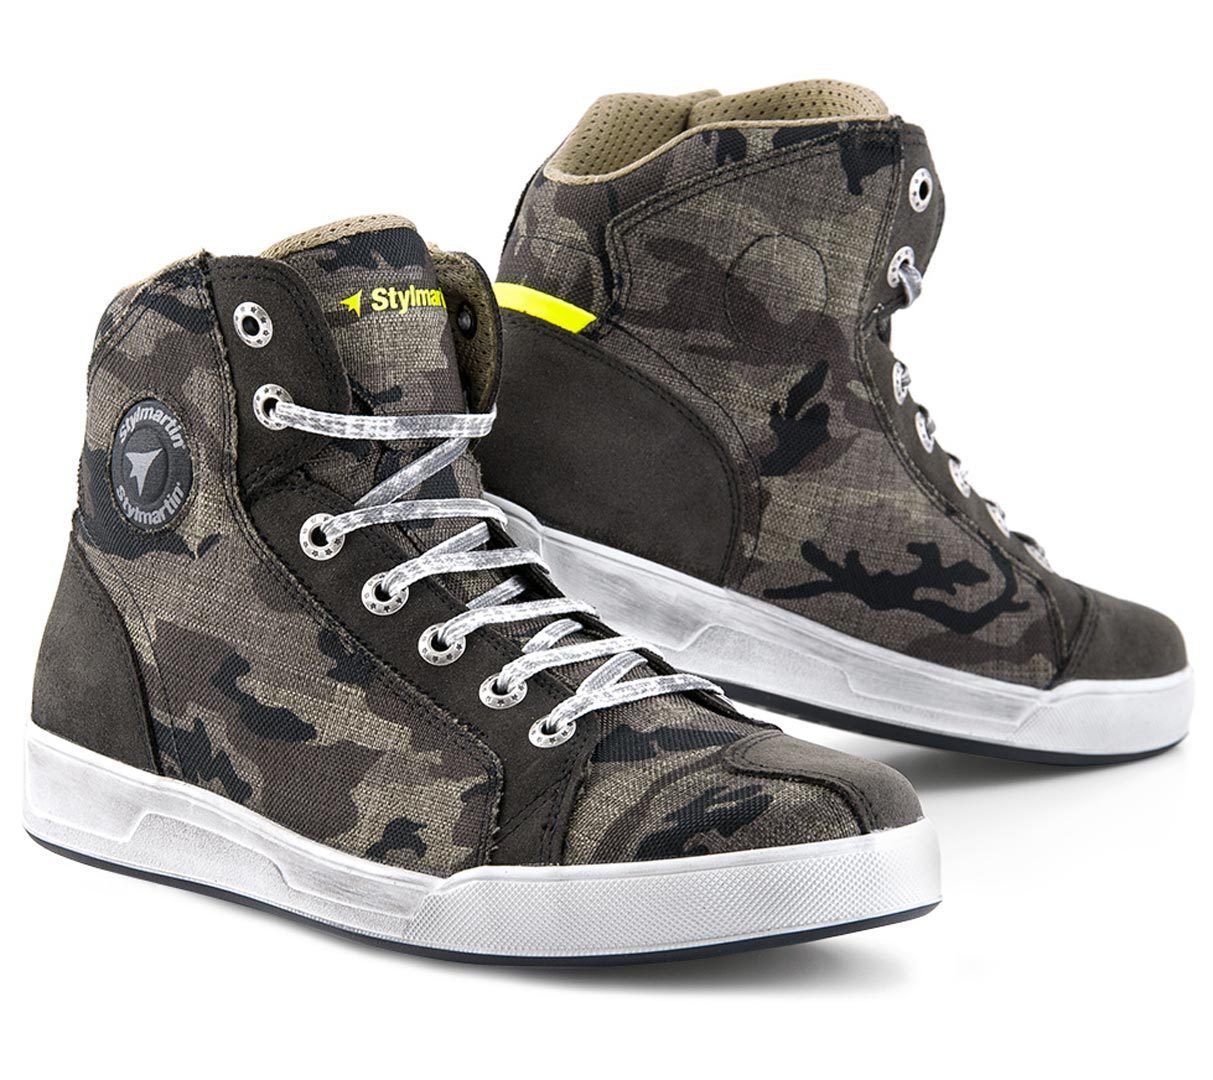 Stylmartin Raptor Evo Sneakers, grün-braun, Größe 39, grün-braun, Größe 39